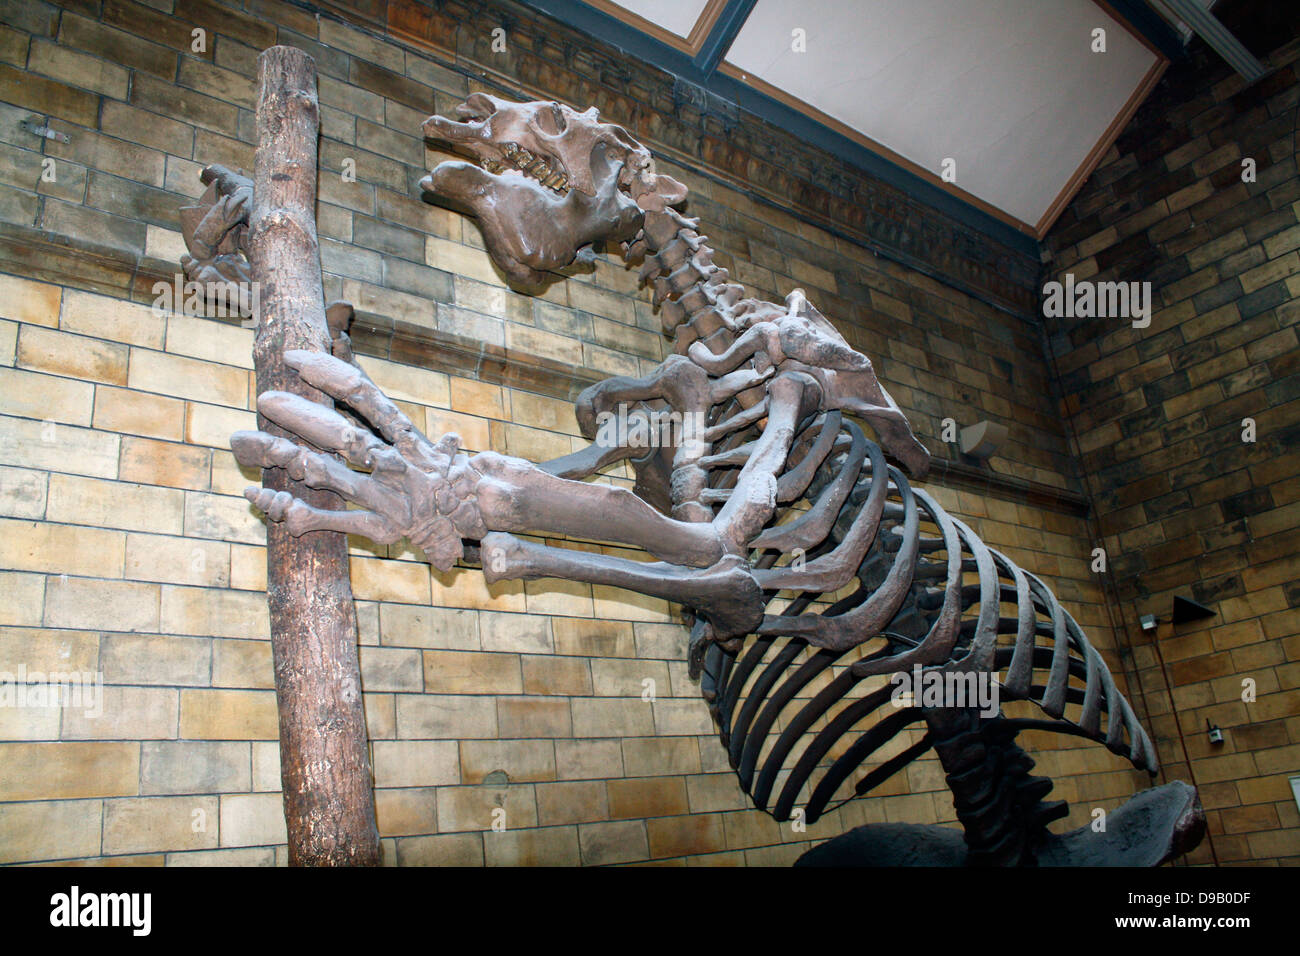 Mammifero estinto - Megatherium Americanum. Massa gigante bradipo vissuto nel fresco e asciutto spazzolare e praterie del Sud America fino a circa 10.000 anni fa. Lo scheletro spesso viene confusa con quella di un dinosauro, ma la massa gigante bradipo era effettivamente un mammifero Foto Stock